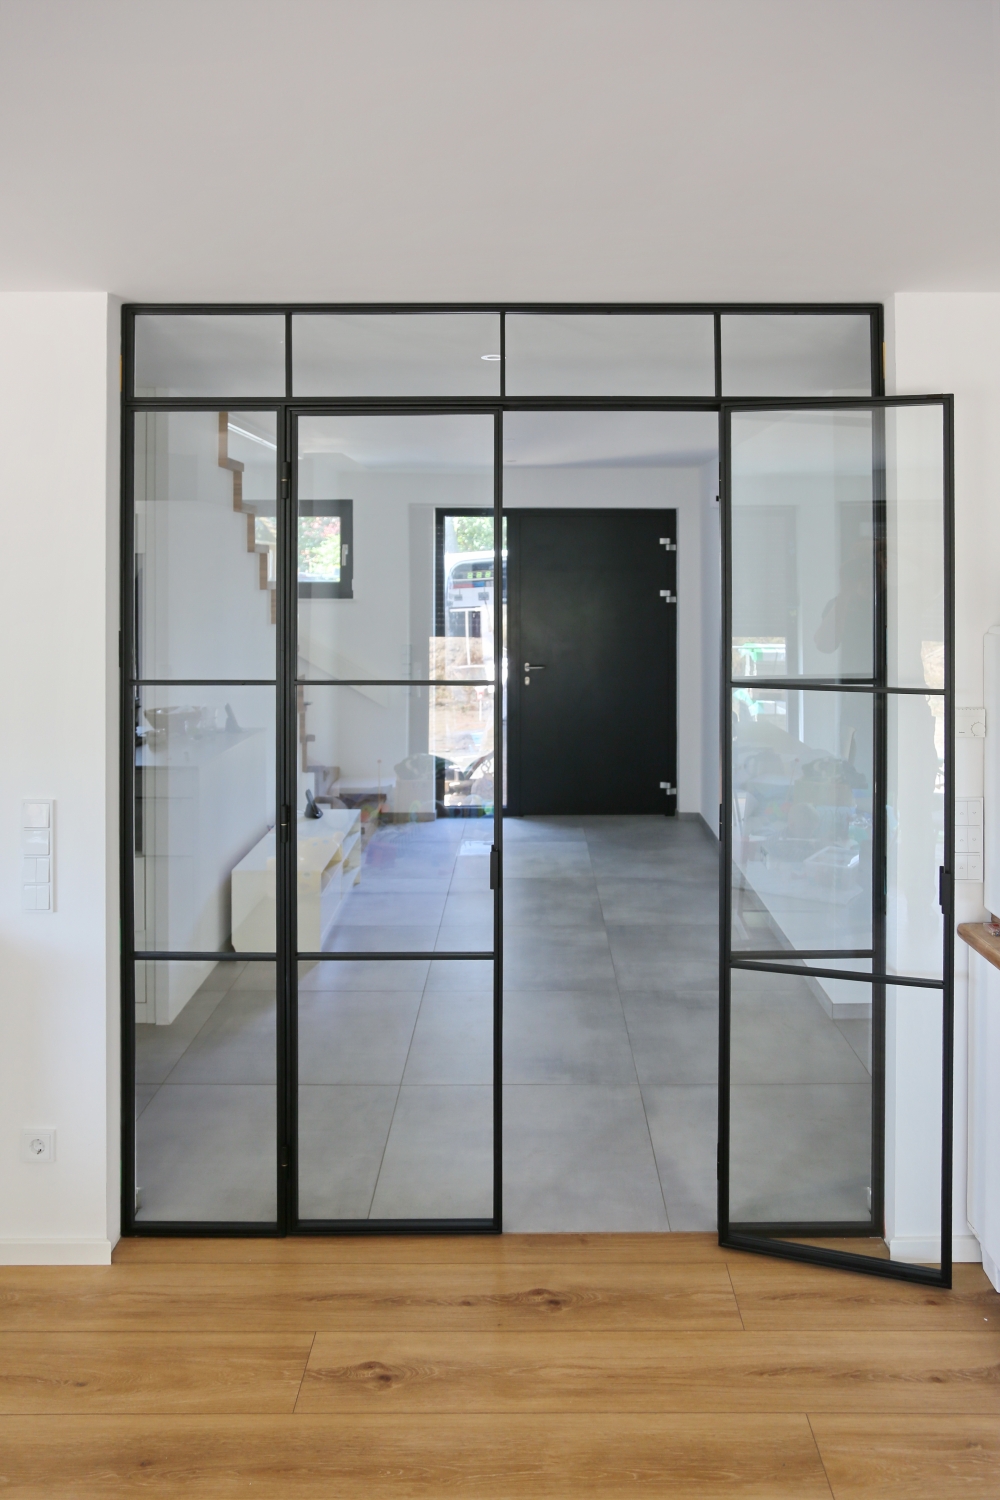 Tür im Bauhaus Stil